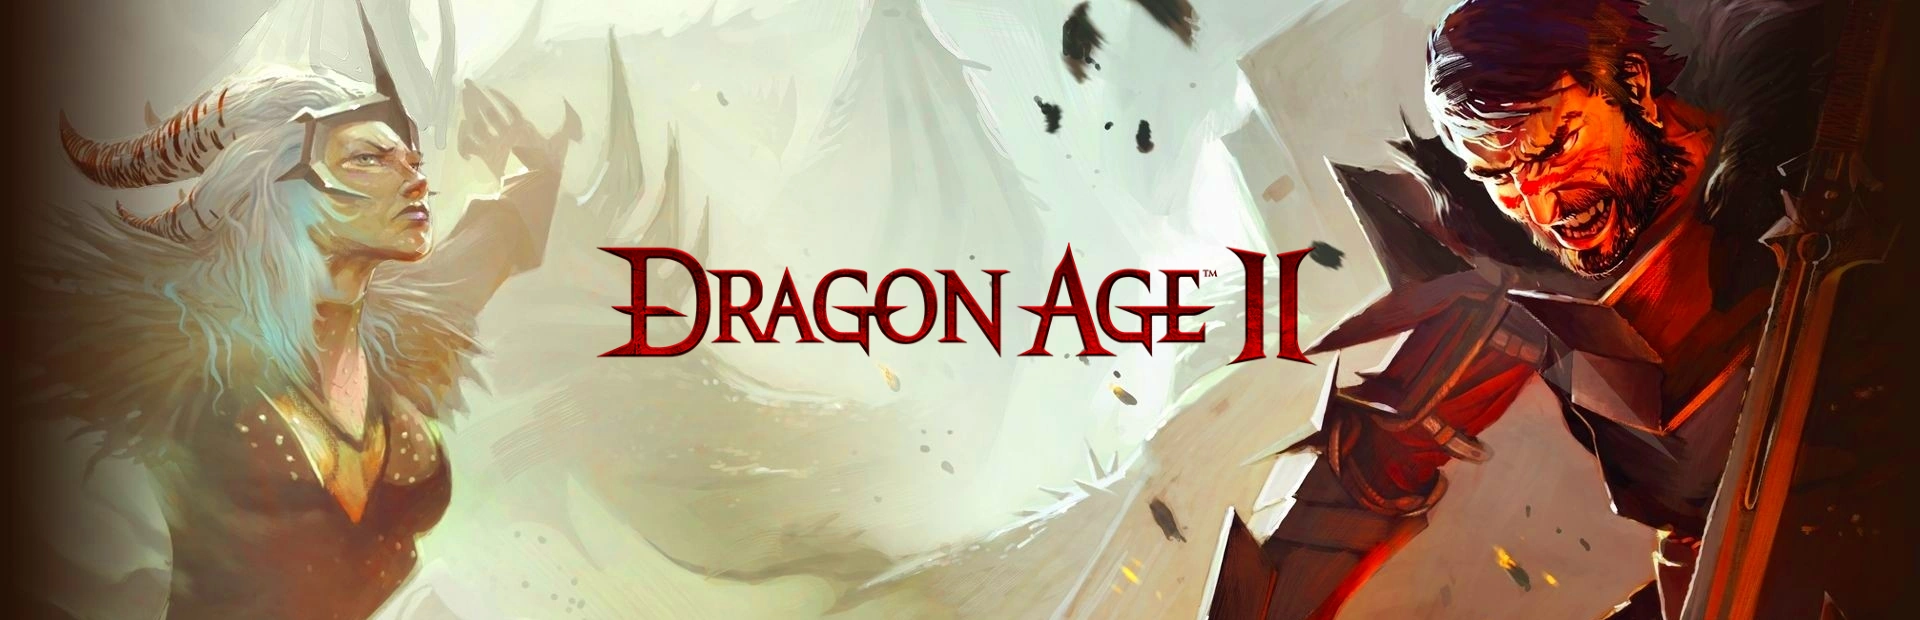 دانلود بازی Dragon Age II برای کامپیوتر | گیمباتو